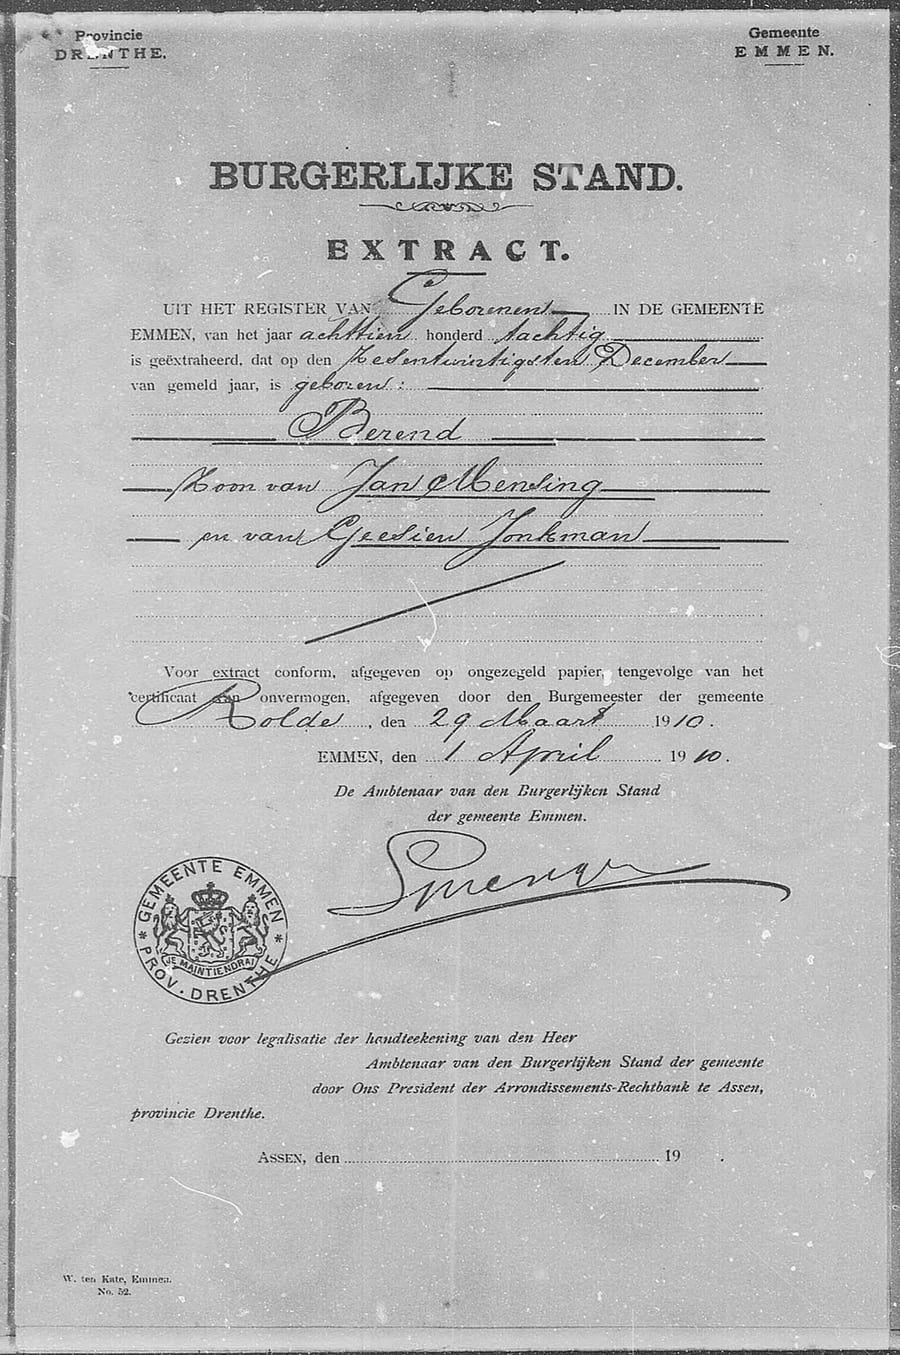 Register extract BS Berend 1910